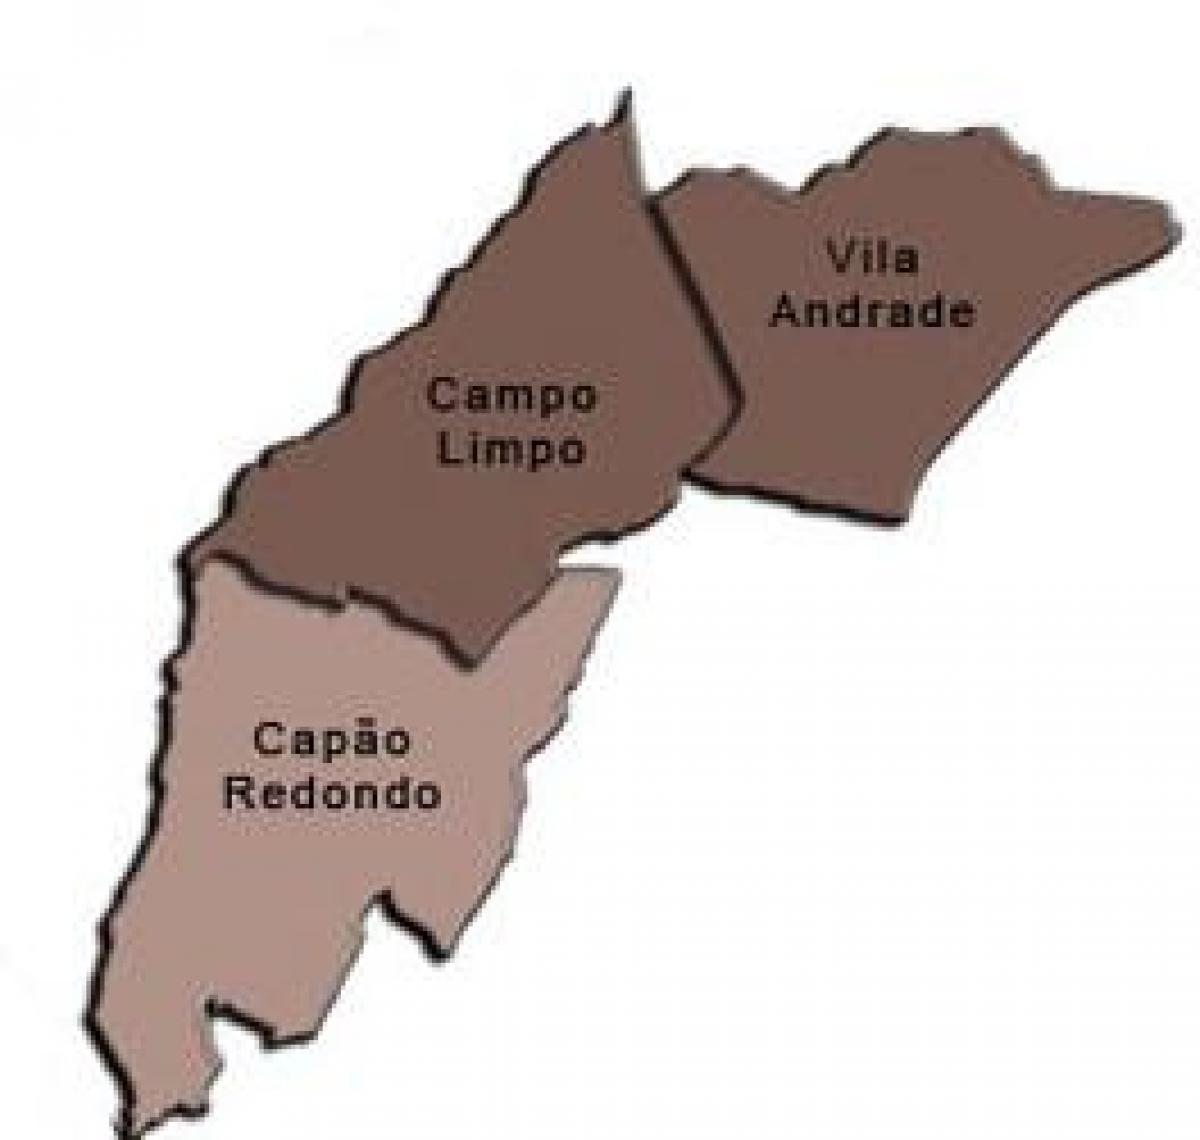 מפה של קאמפו Limpo תת-פריפקטורה